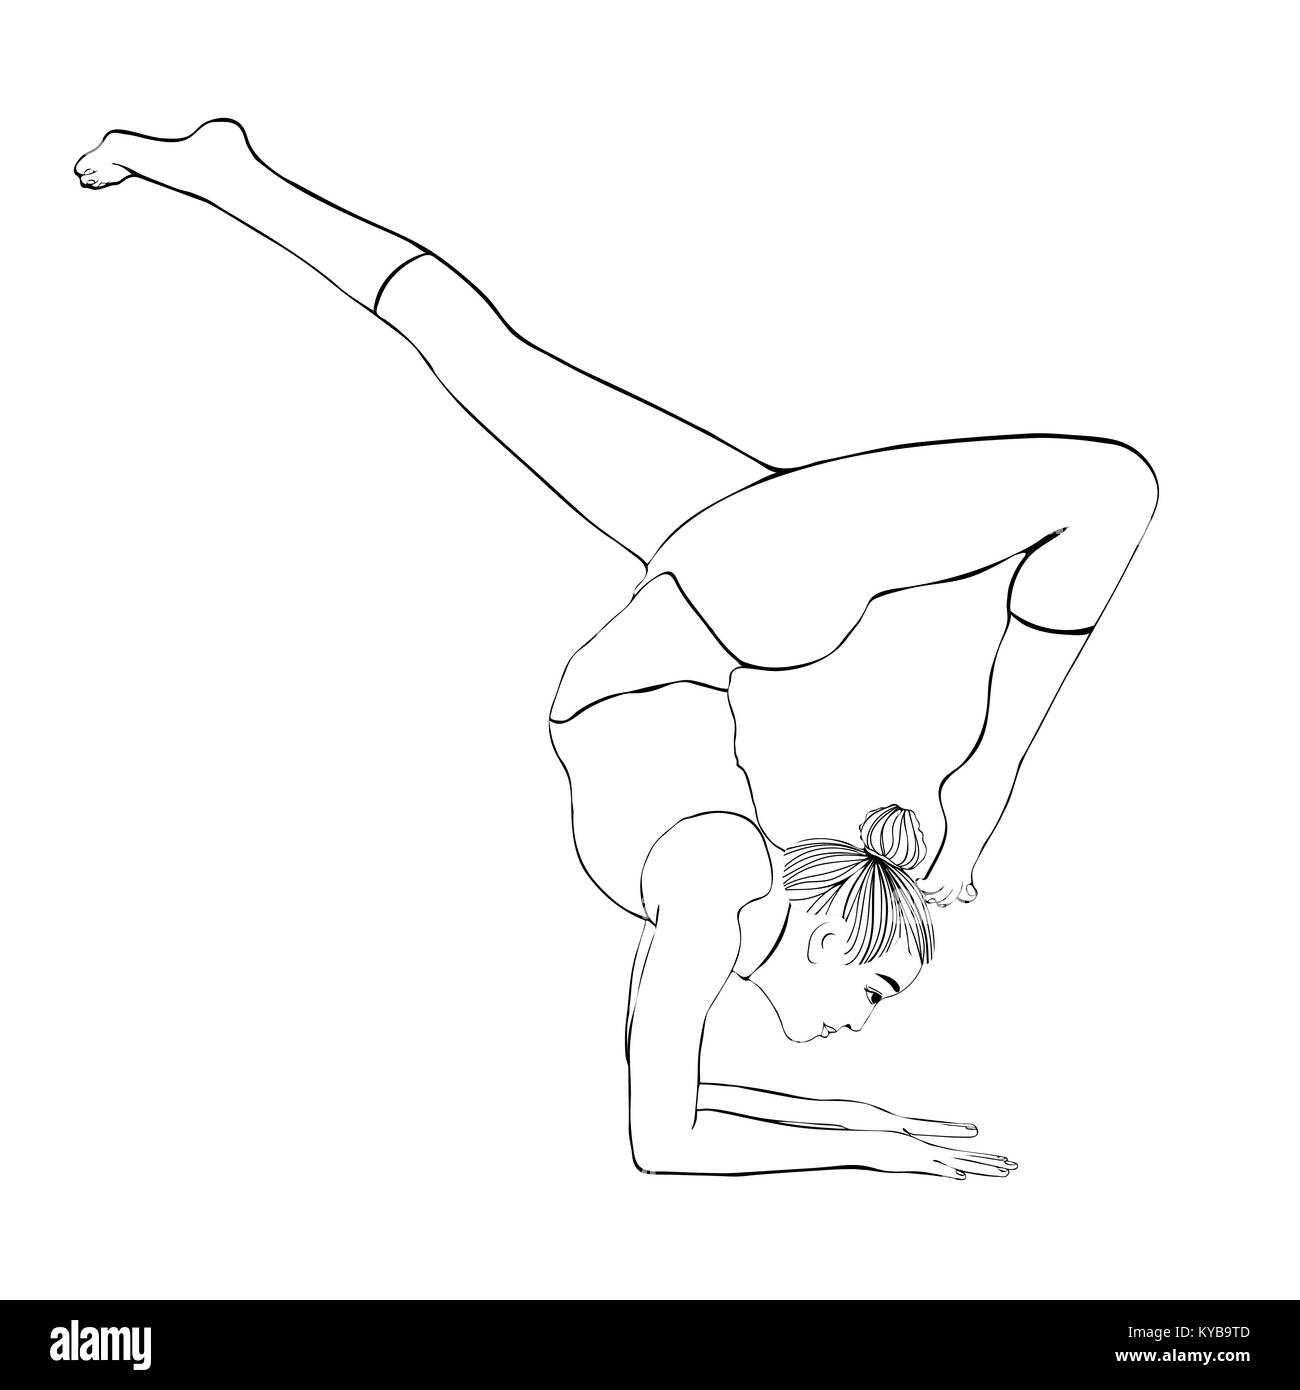 Yoga pose, femme, à l'atr coloriage portrait dessin vectoriel. La méditation, s'est engagé dans une, elle prépare un stand sur les mains, les contours noir et blanc illustration. Isolé sur fond blanc Illustration de Vecteur